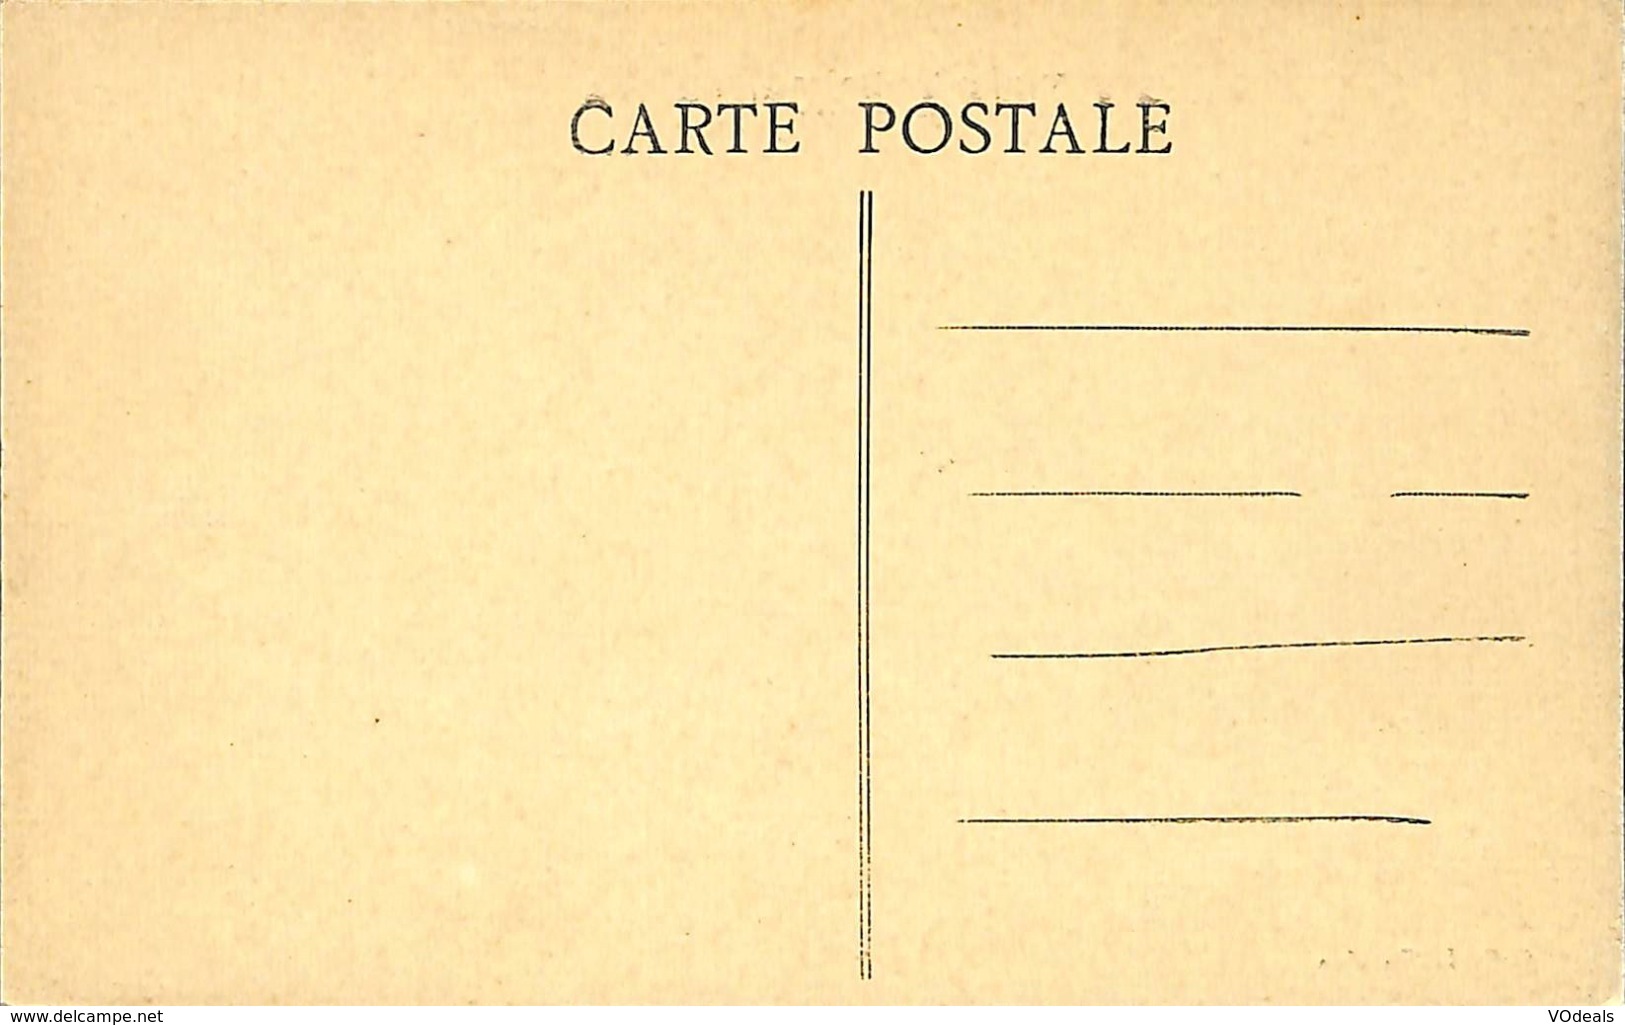 CPA - France - Lot de 10 cartes postales - Lot 10